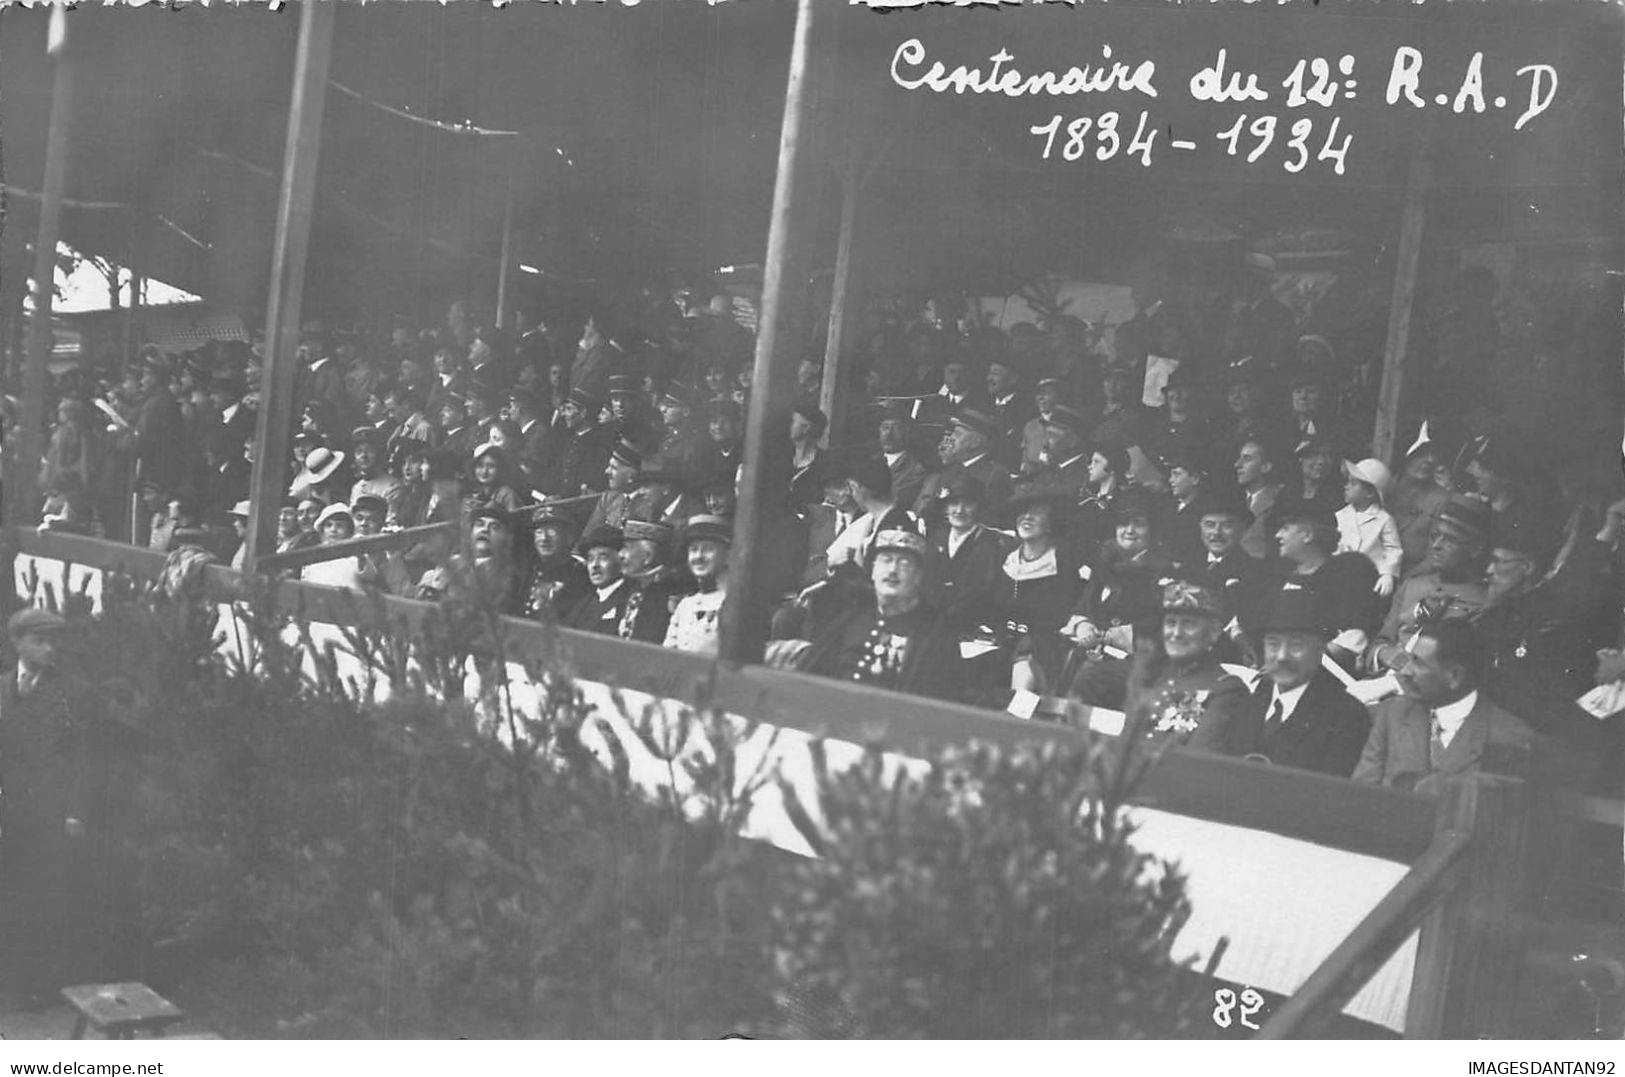 67 HAGUENAU #FG55386 CENTENAIRE DU 12 EME R.A.D. 1834 / 1934 JACQUES FESCHOTTE CARTE PHOTO - Haguenau